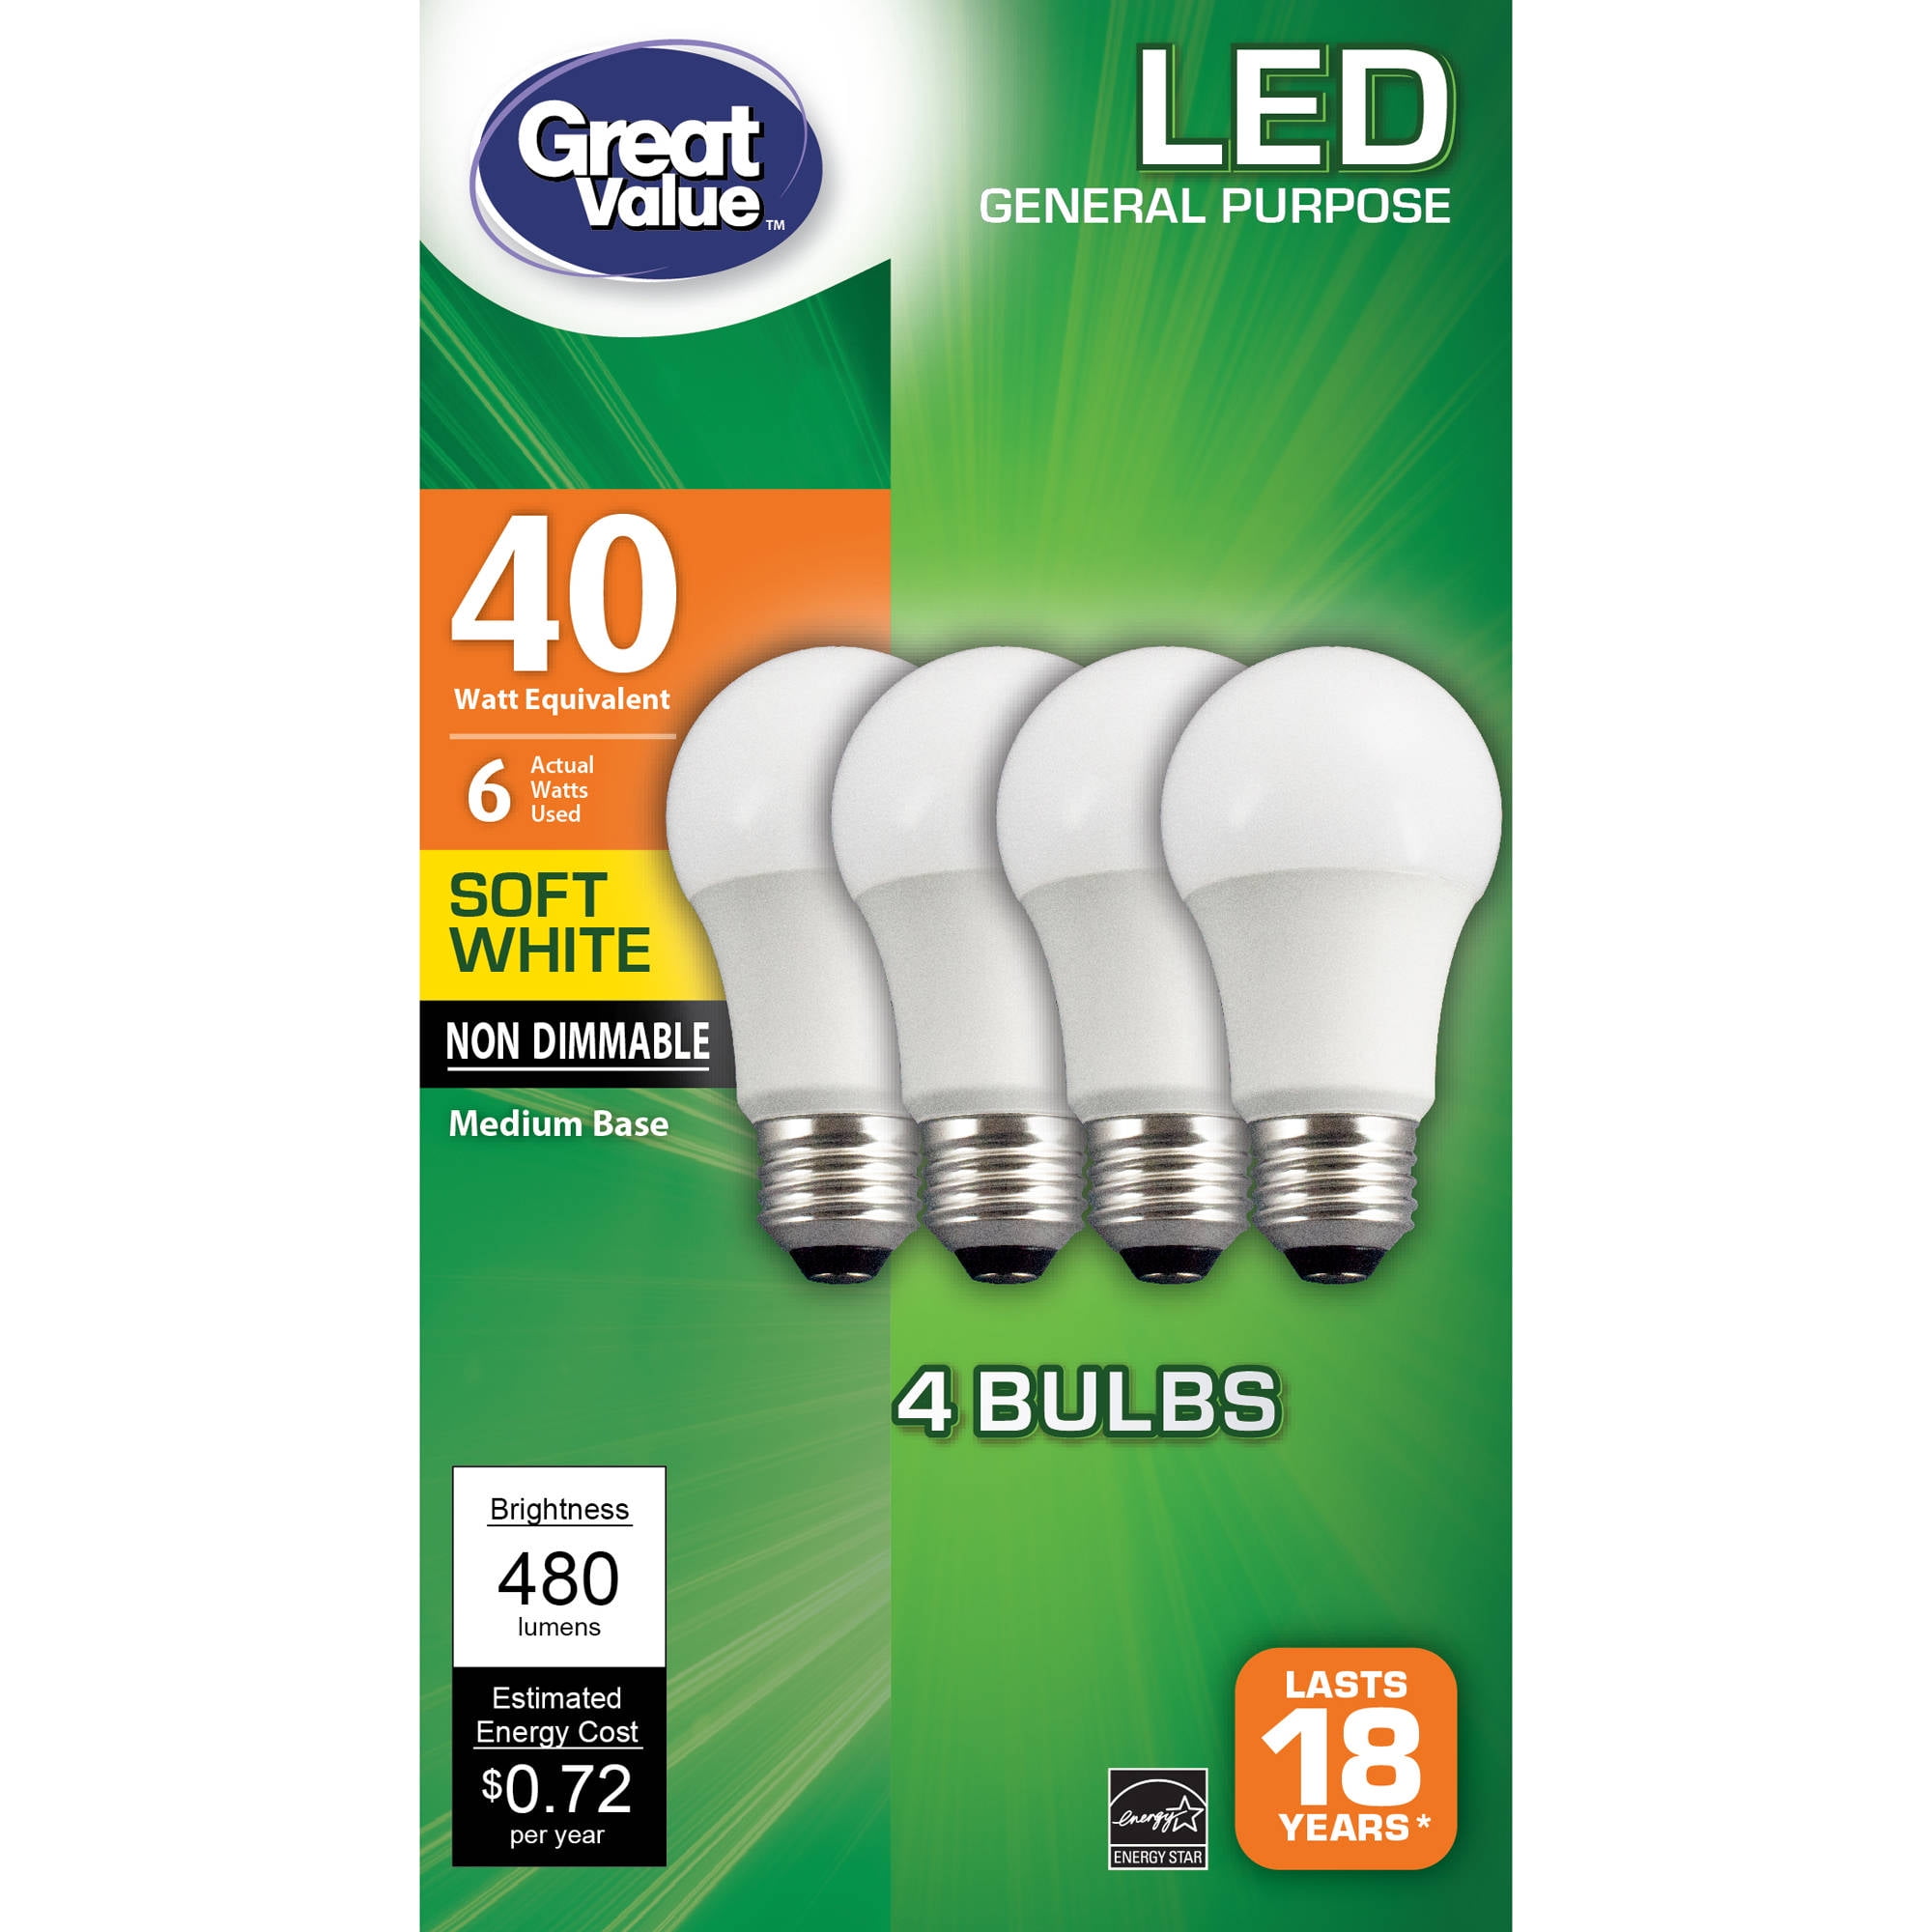 All Light Bulbs by Walmart